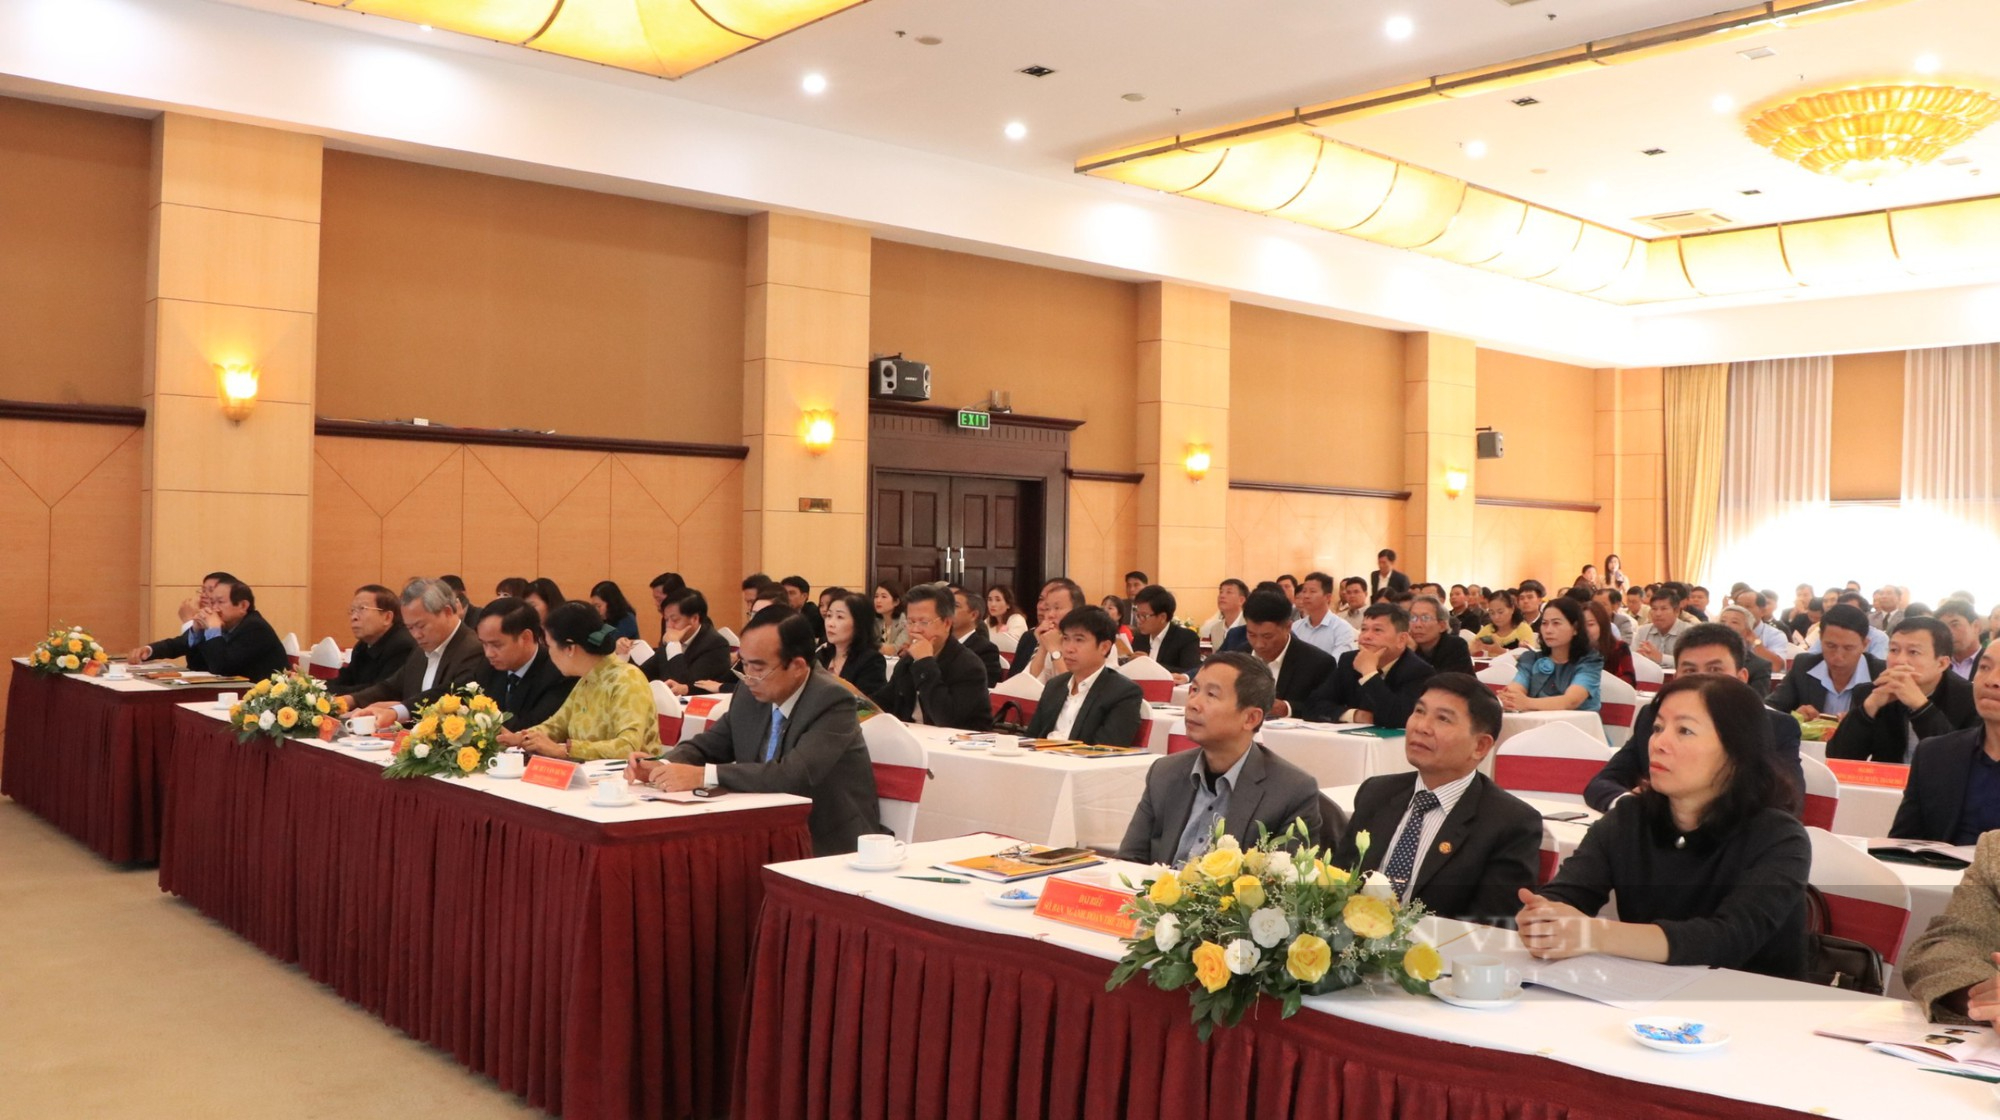 5 năm phong trào nông dân sản xuất kinh doanh giỏi ở Lâm Đồng: Xuất hiện nhiều mô hình vốn kinh doanh hàng trăm tỷ - Ảnh 1.